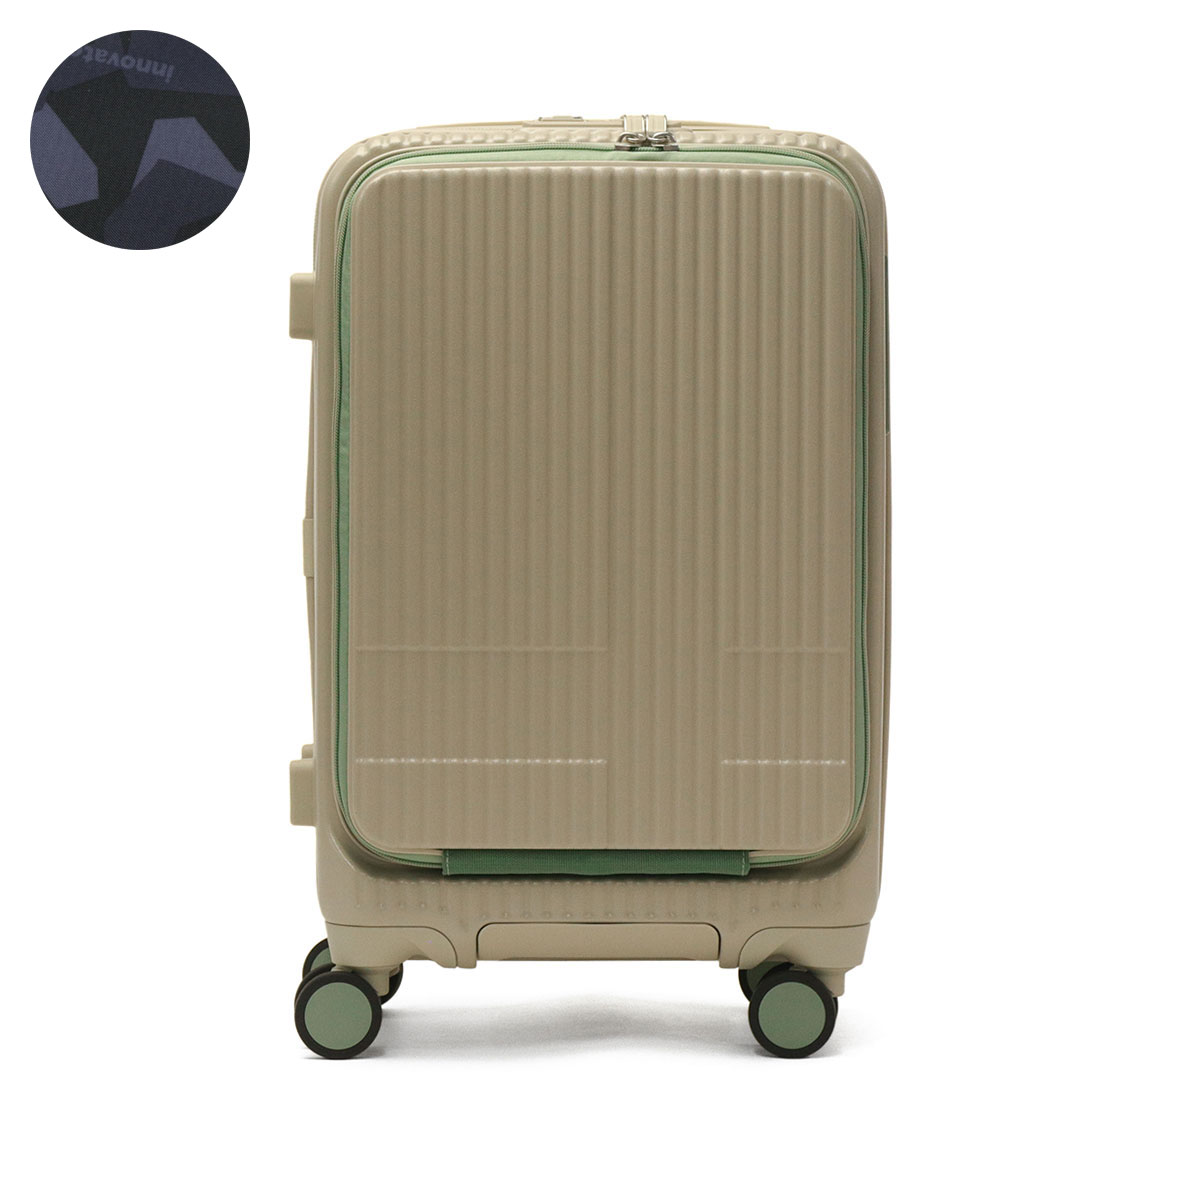 正規品2年保証 イノベーター スーツケース INV50 機内持ち込み キャリーケース 38L Sサイズ innovator 軽量 静音 ブランド